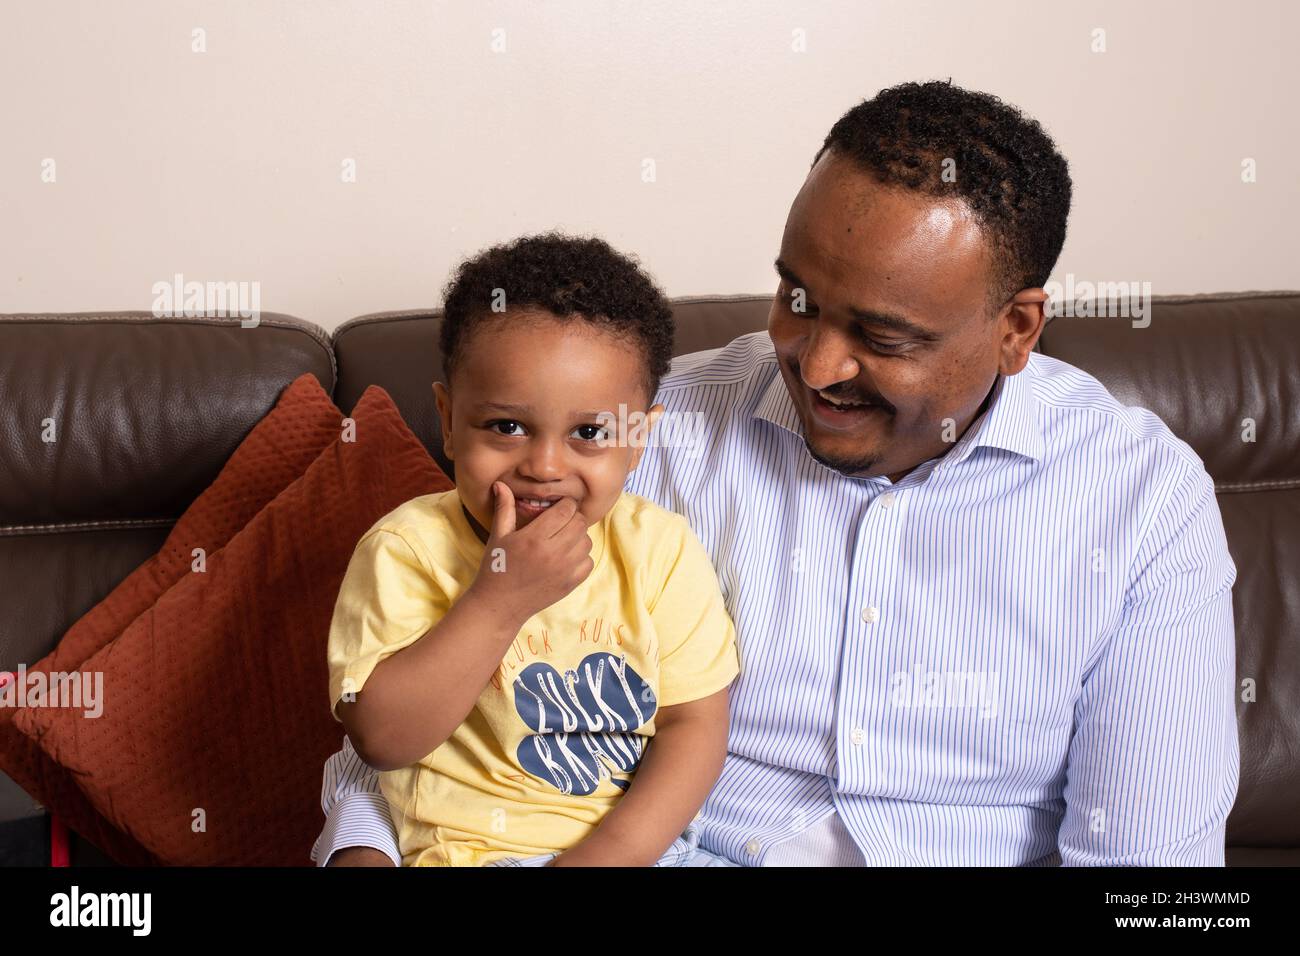 Portrait riant d'un jeune garçon de 2 ans avec son père, assis sur un canapé à la maison Banque D'Images